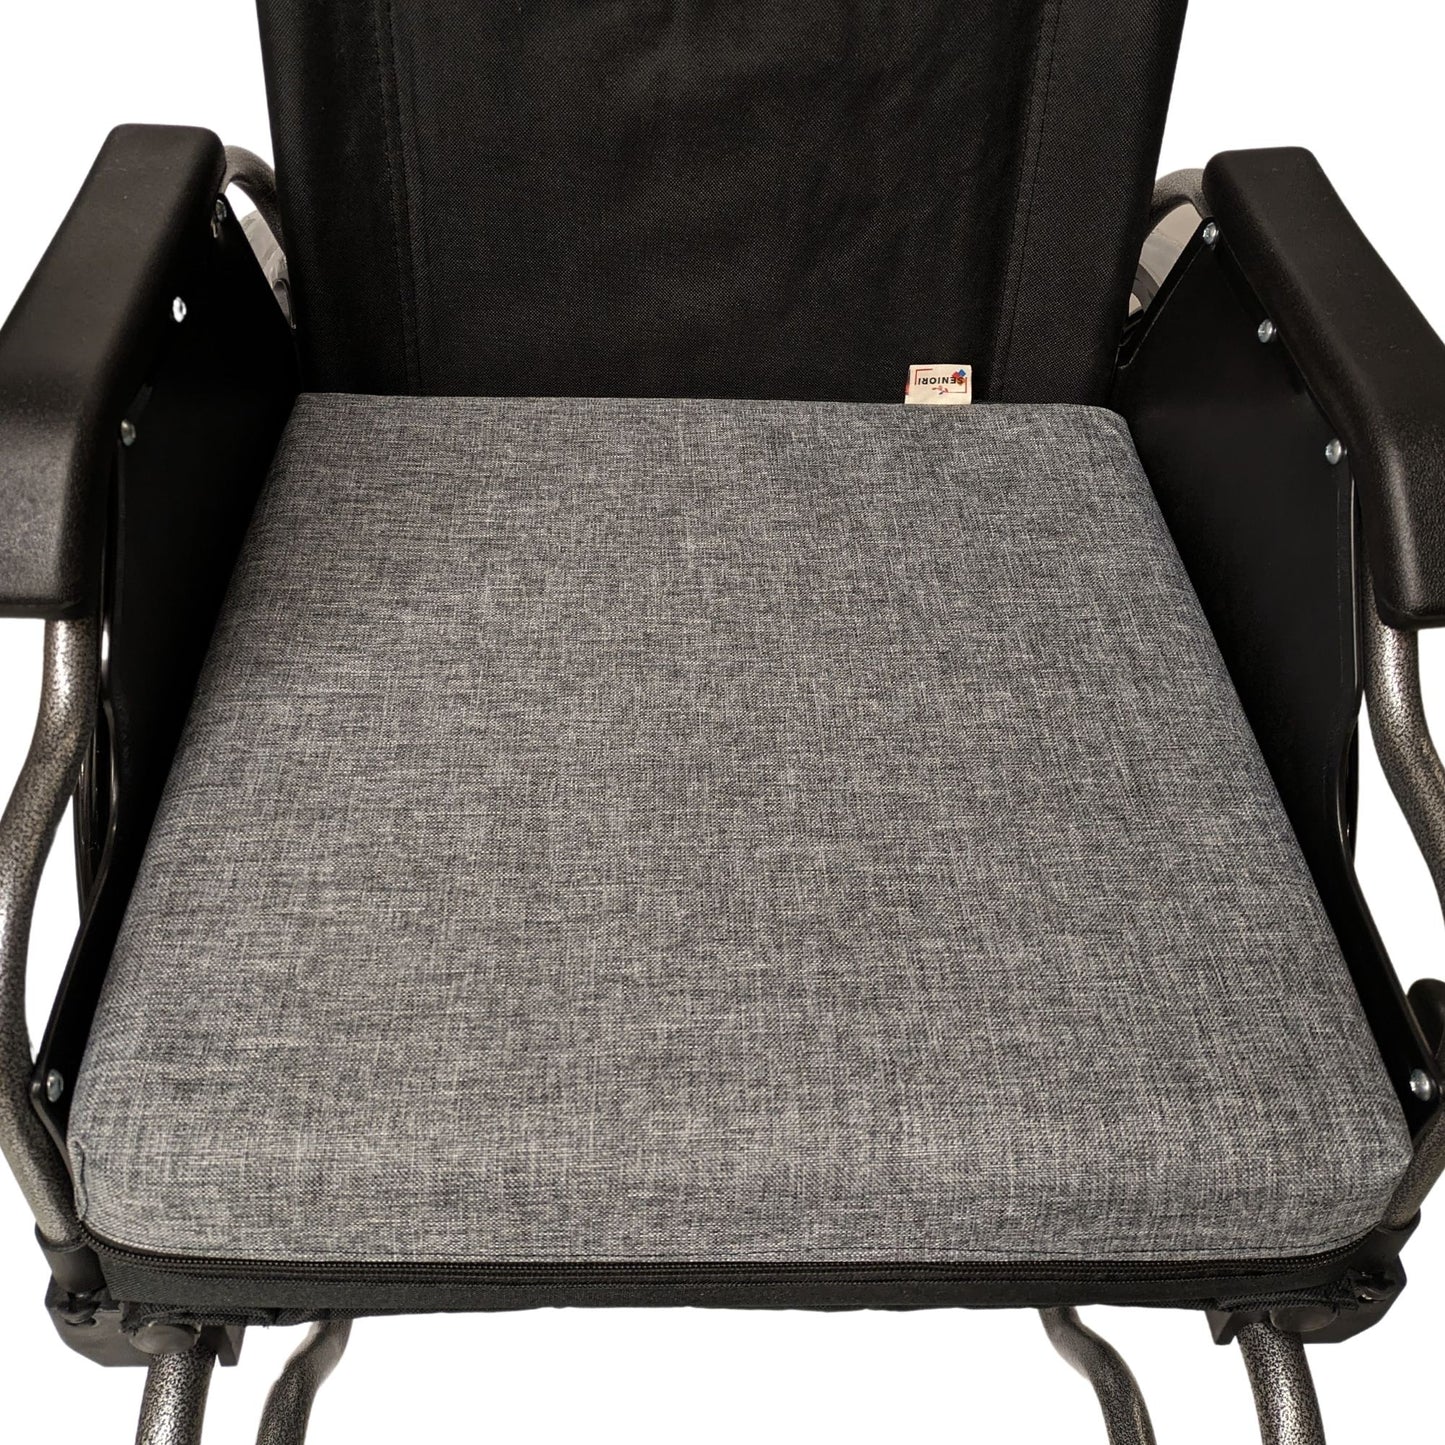 SENIORI Rollstuhlkissen Sitzkissen für Rollstuhl Sitzerhöhungv 42 x 42 x 8 cm Antidekubitus Kissen mit doppelter Schaumstoffschicht (3K. Grau)